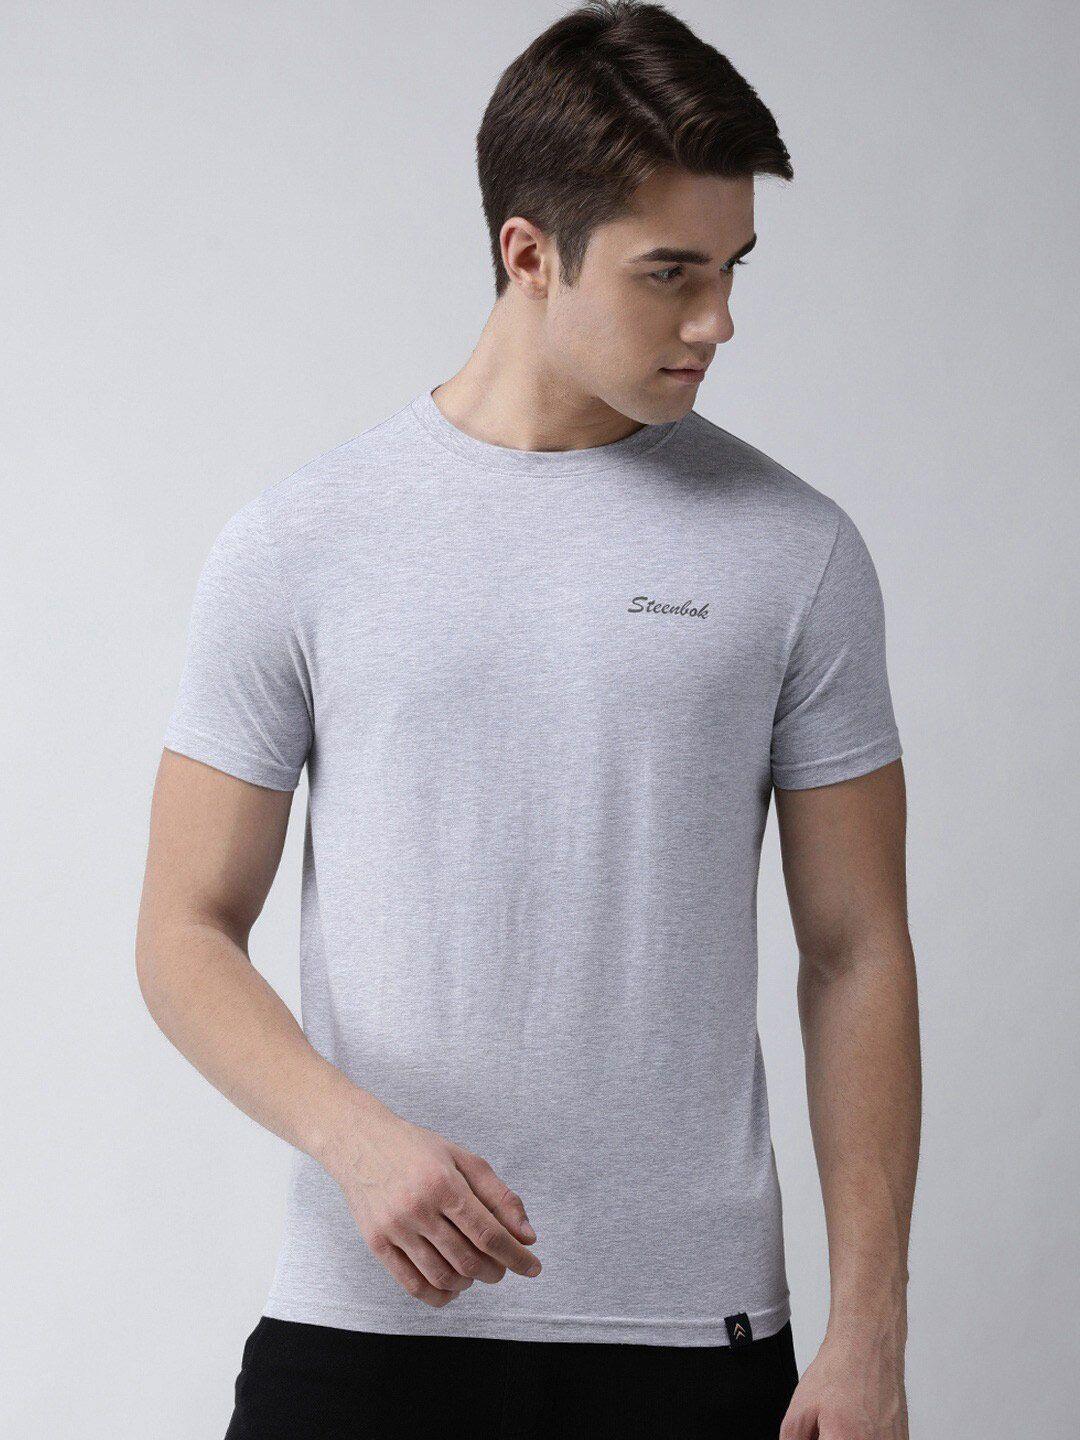 steenbok round neck slim fit odour-free cotton t-shirt